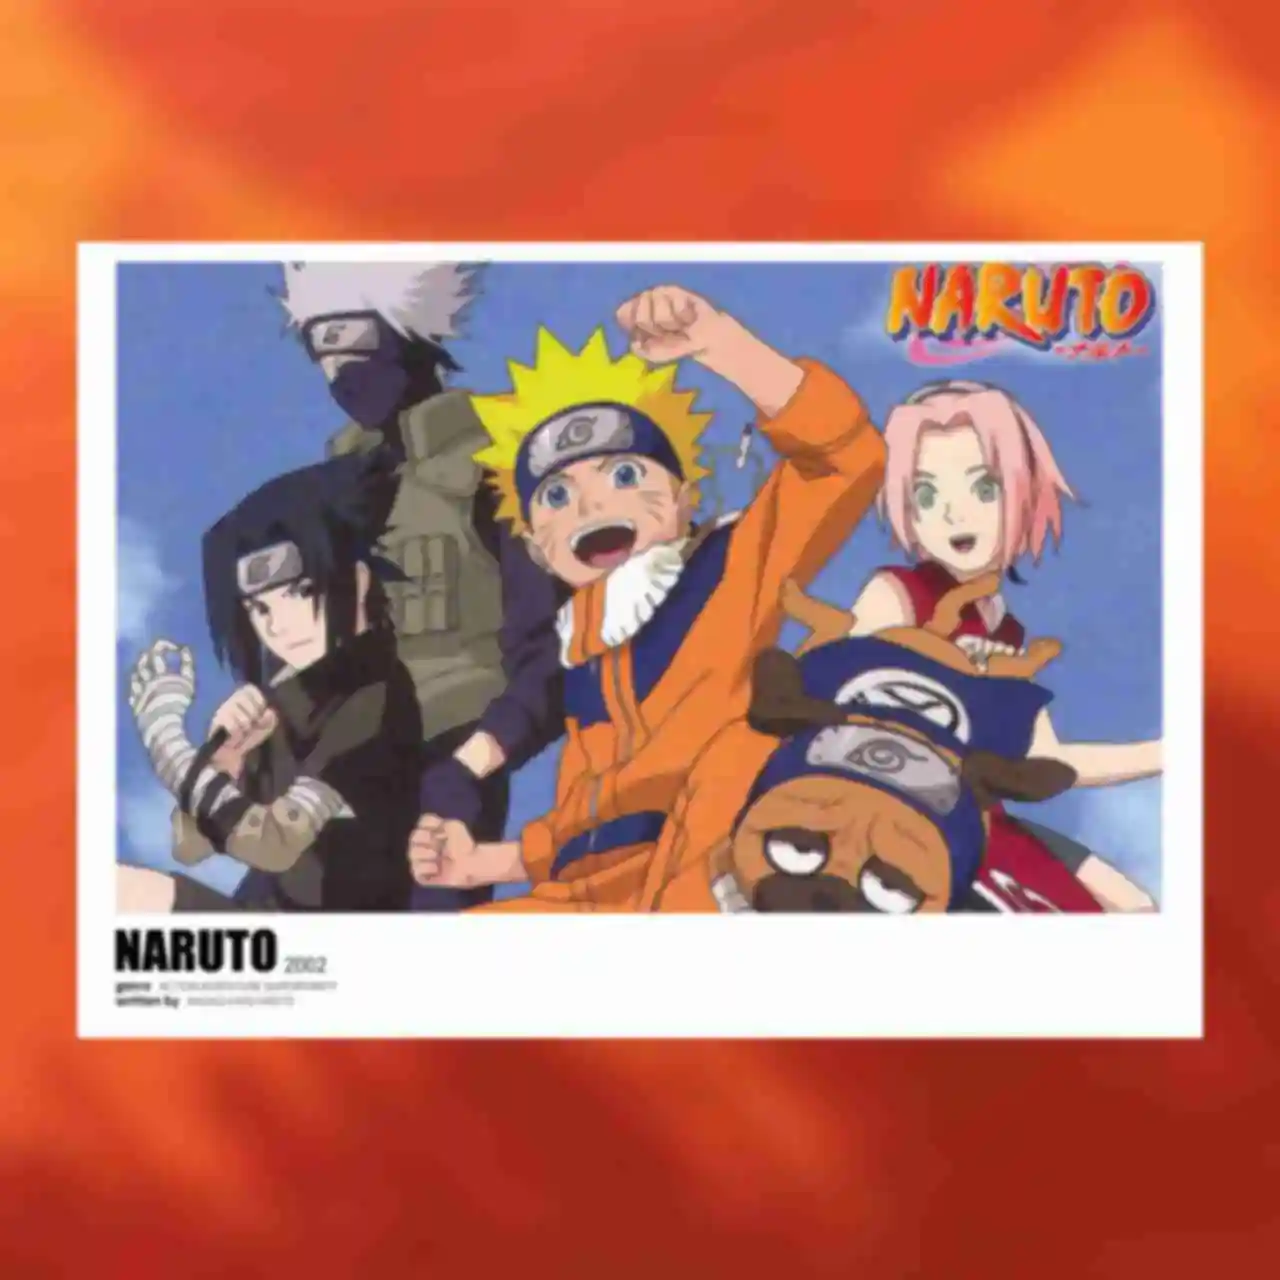 Постер №2 ⦁ Друзі ⦁ Наруто, Саске, Сакура, Какаші ⦁ Плакат Команда 7 ⦁ Сувеніри Наруто ⦁ Подарунки в стилі аніме Naruto